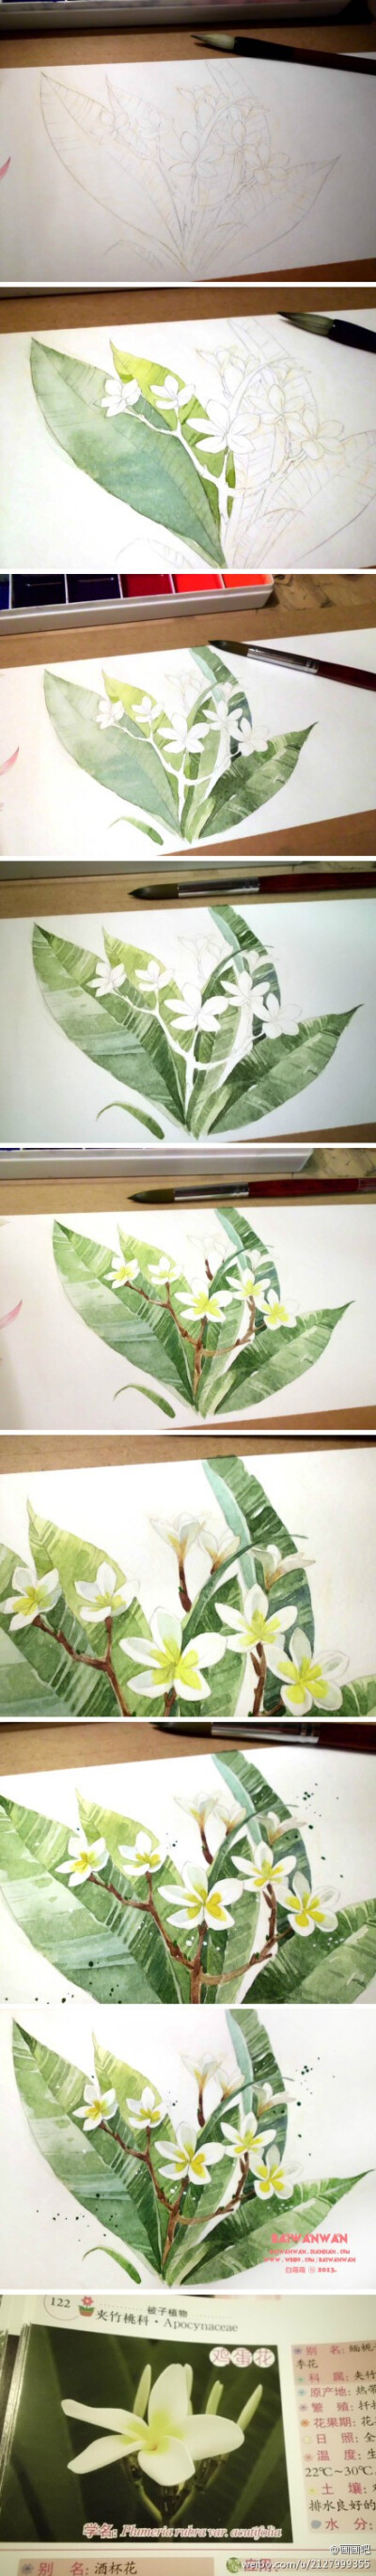 小白的花花世界の水彩画创作过程图~~【微博@白弯弯 · 作品】